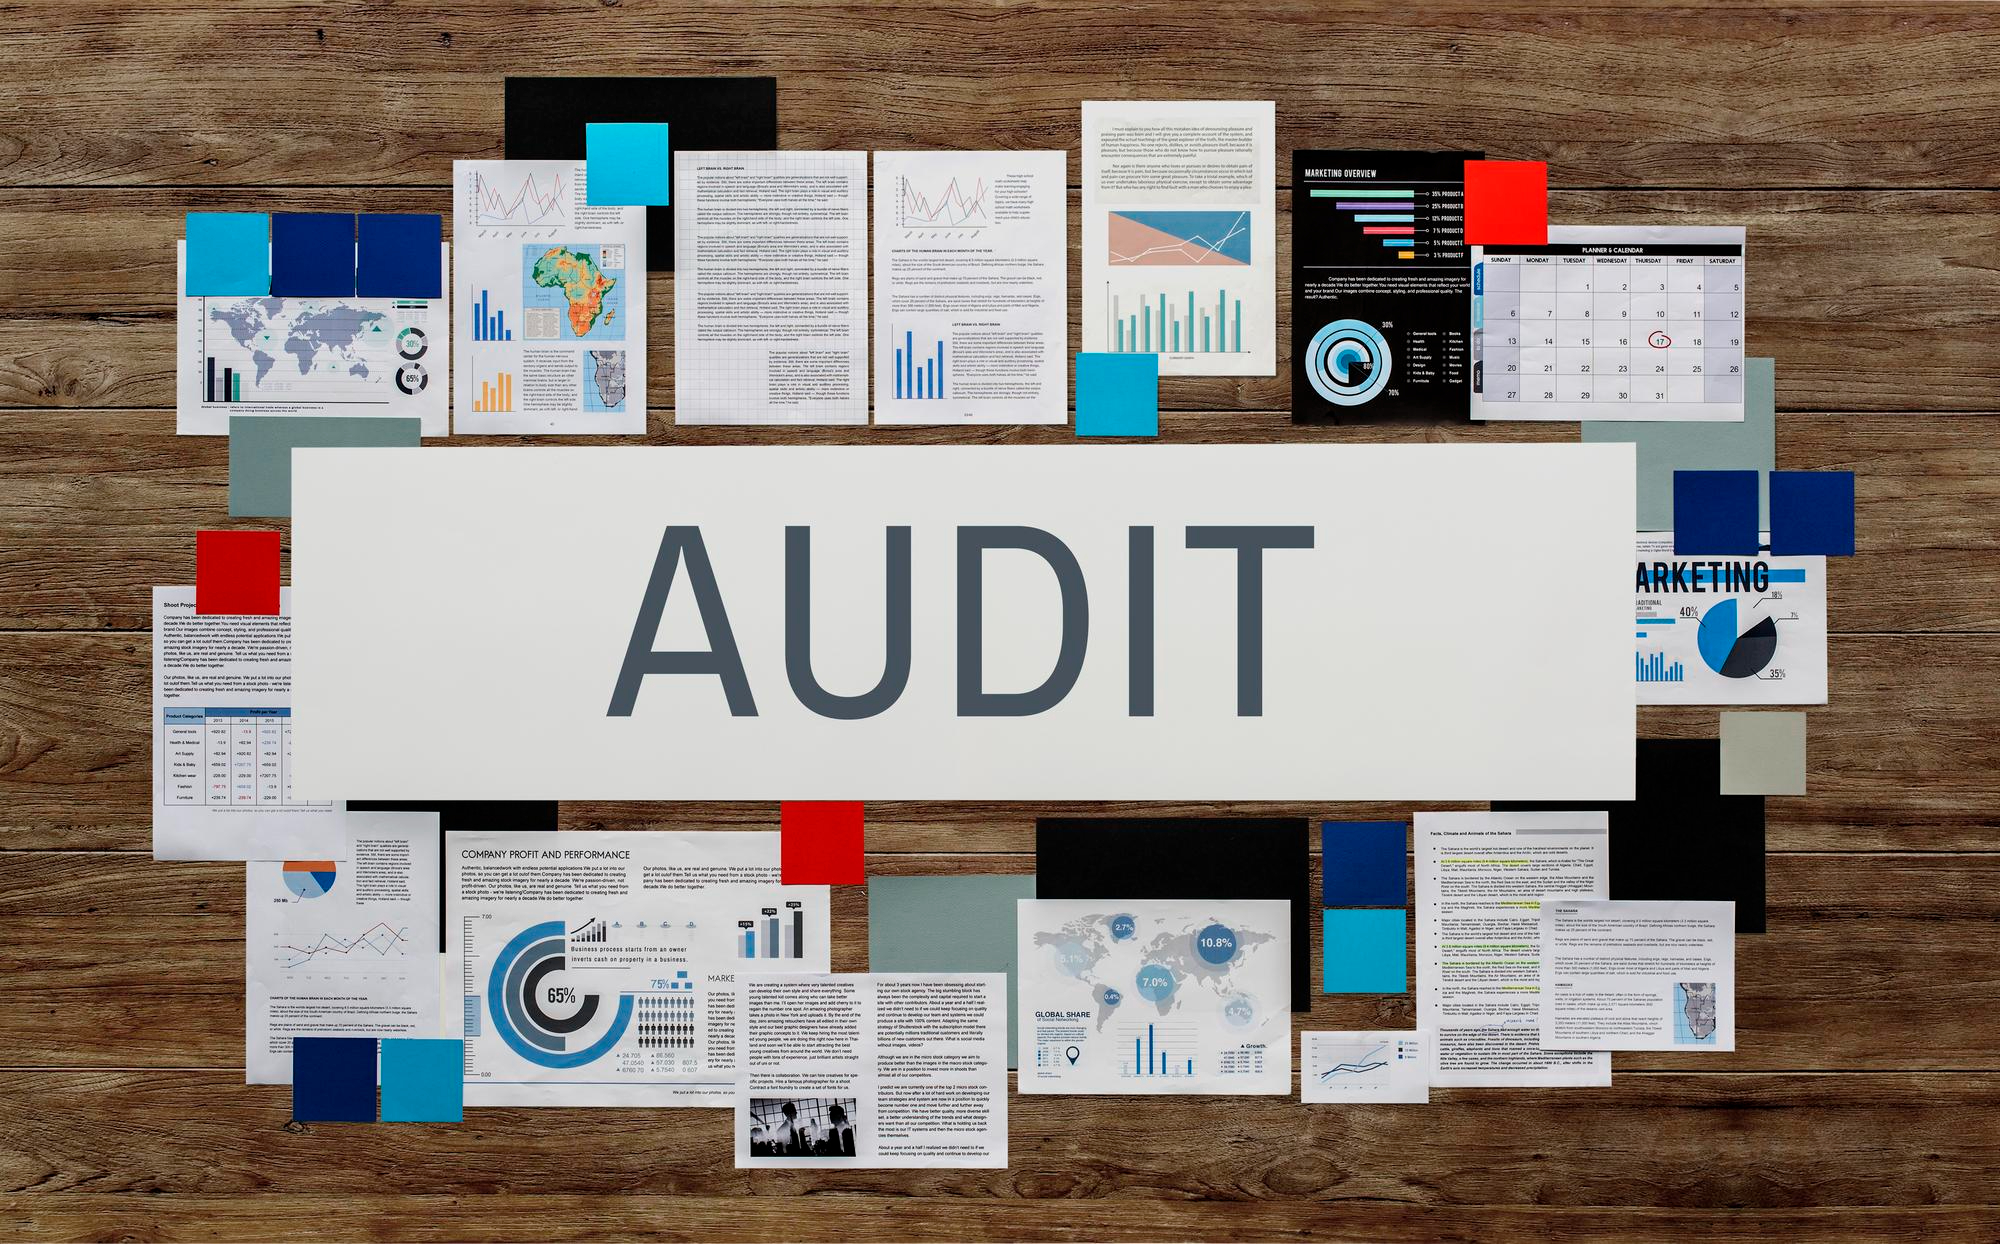 case study on audit evidence